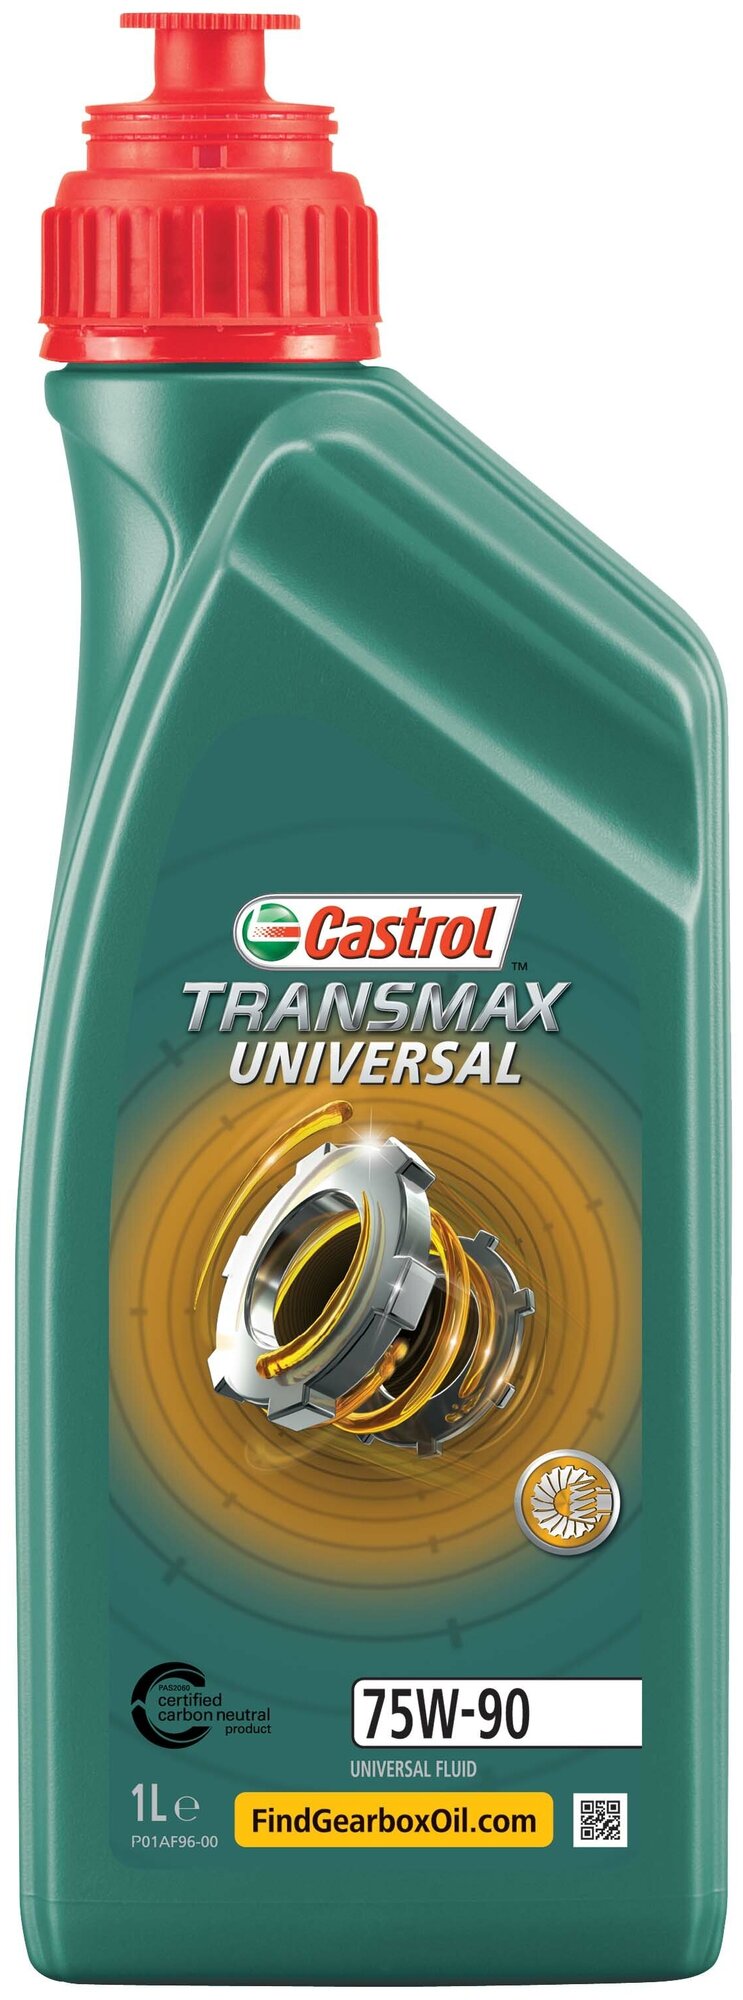   Castrol Universal 75W-90 1 